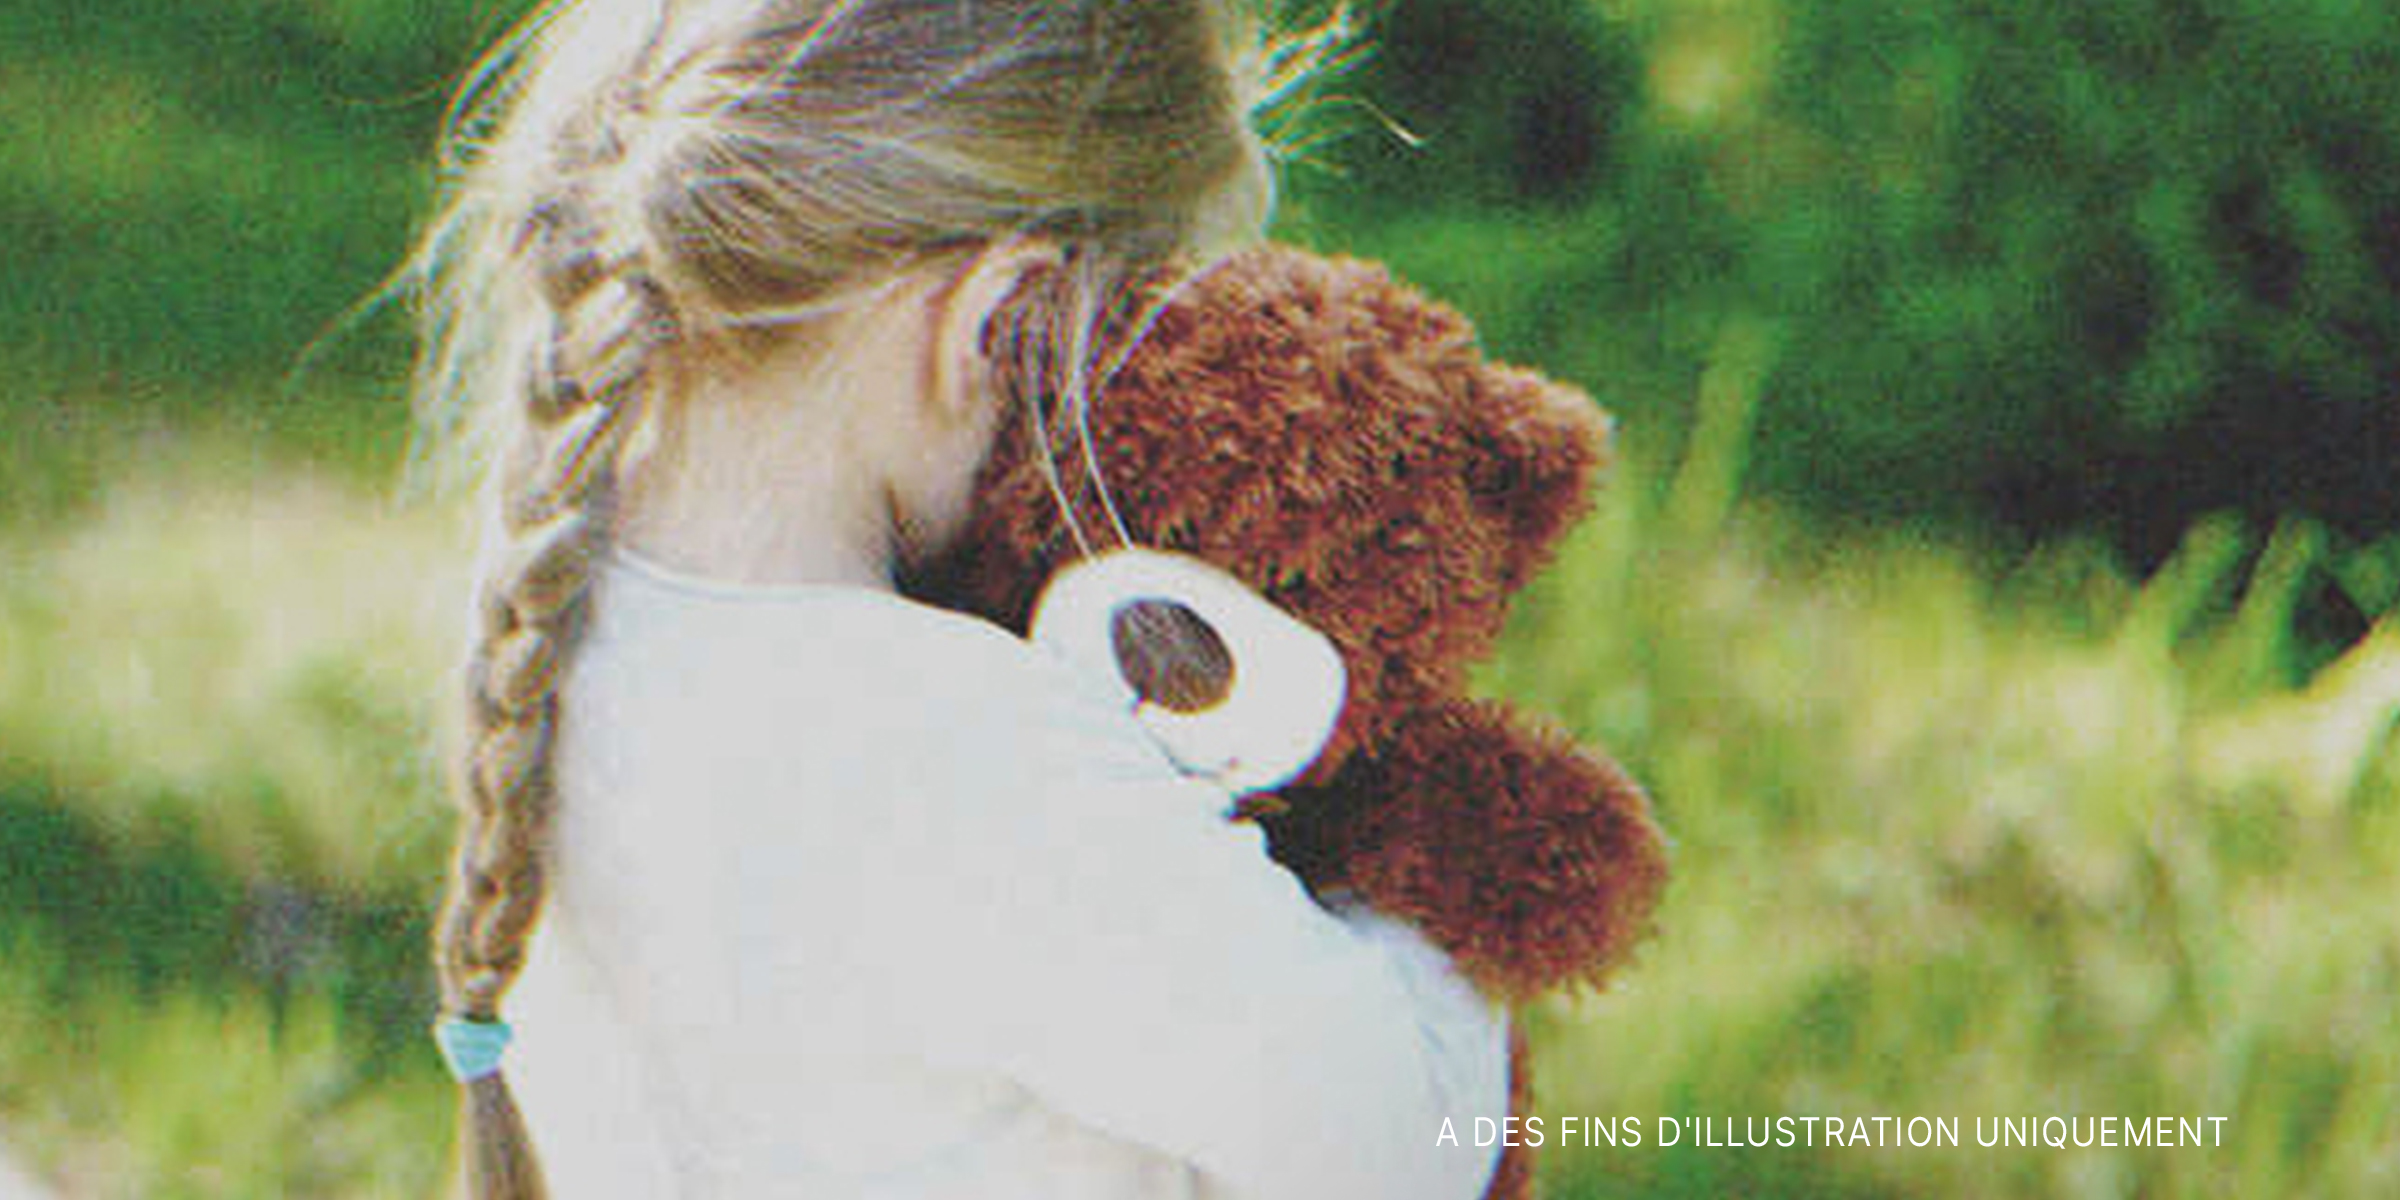 Une petite fille tenant un ours en peluche | Source : Shutterstock